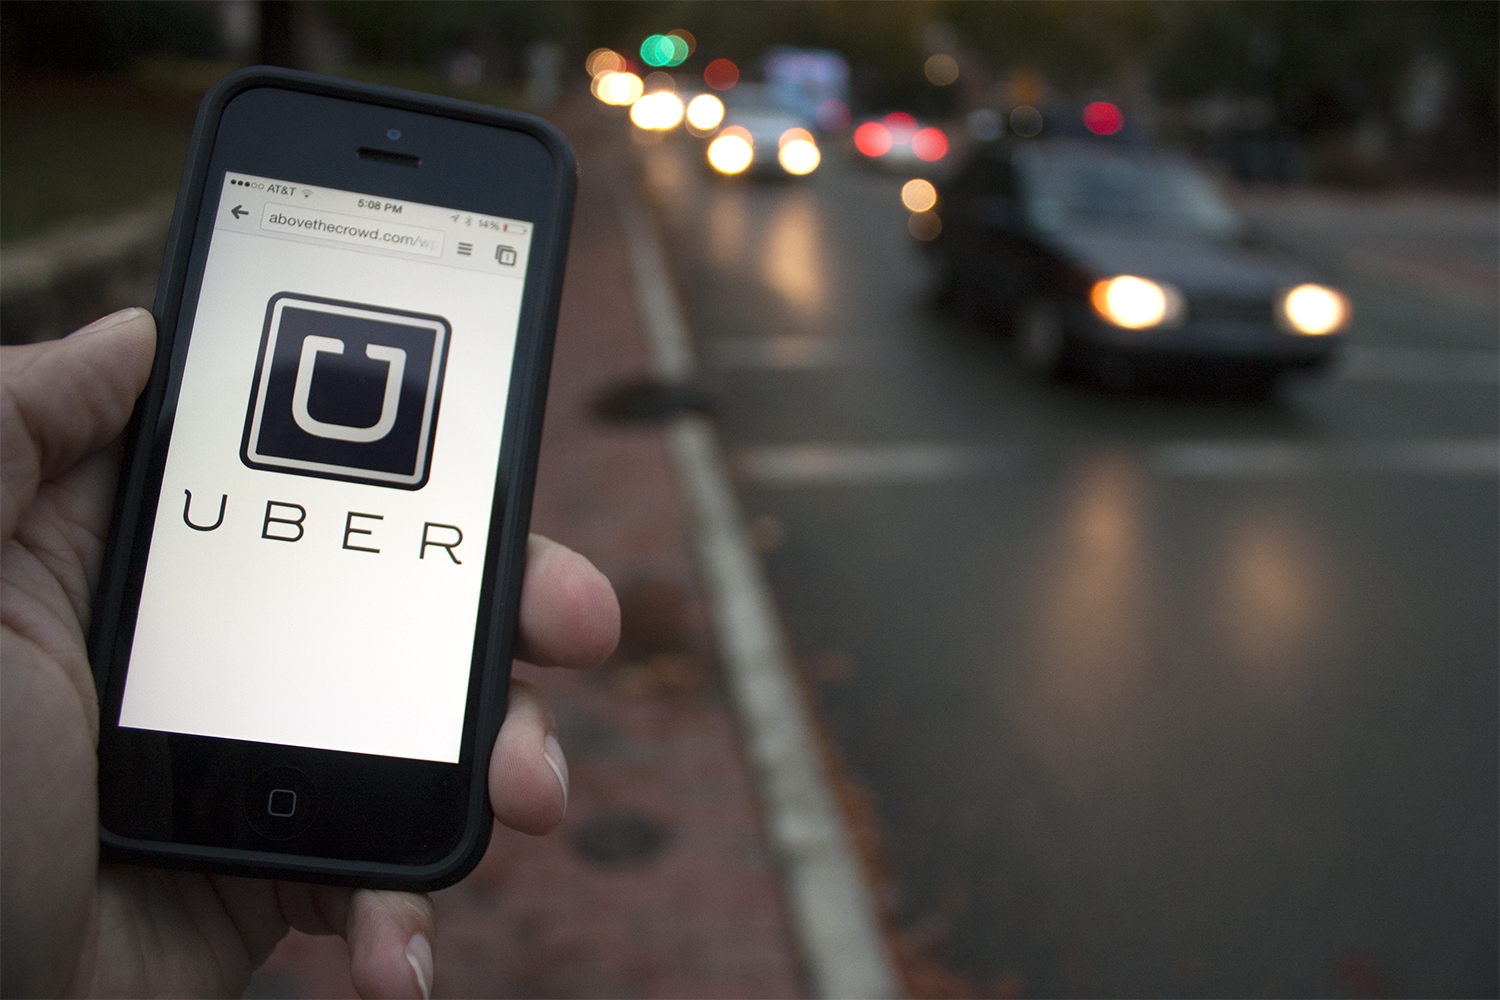 Aresep respondió a taxistas que no bloqueará la aplicación Uber